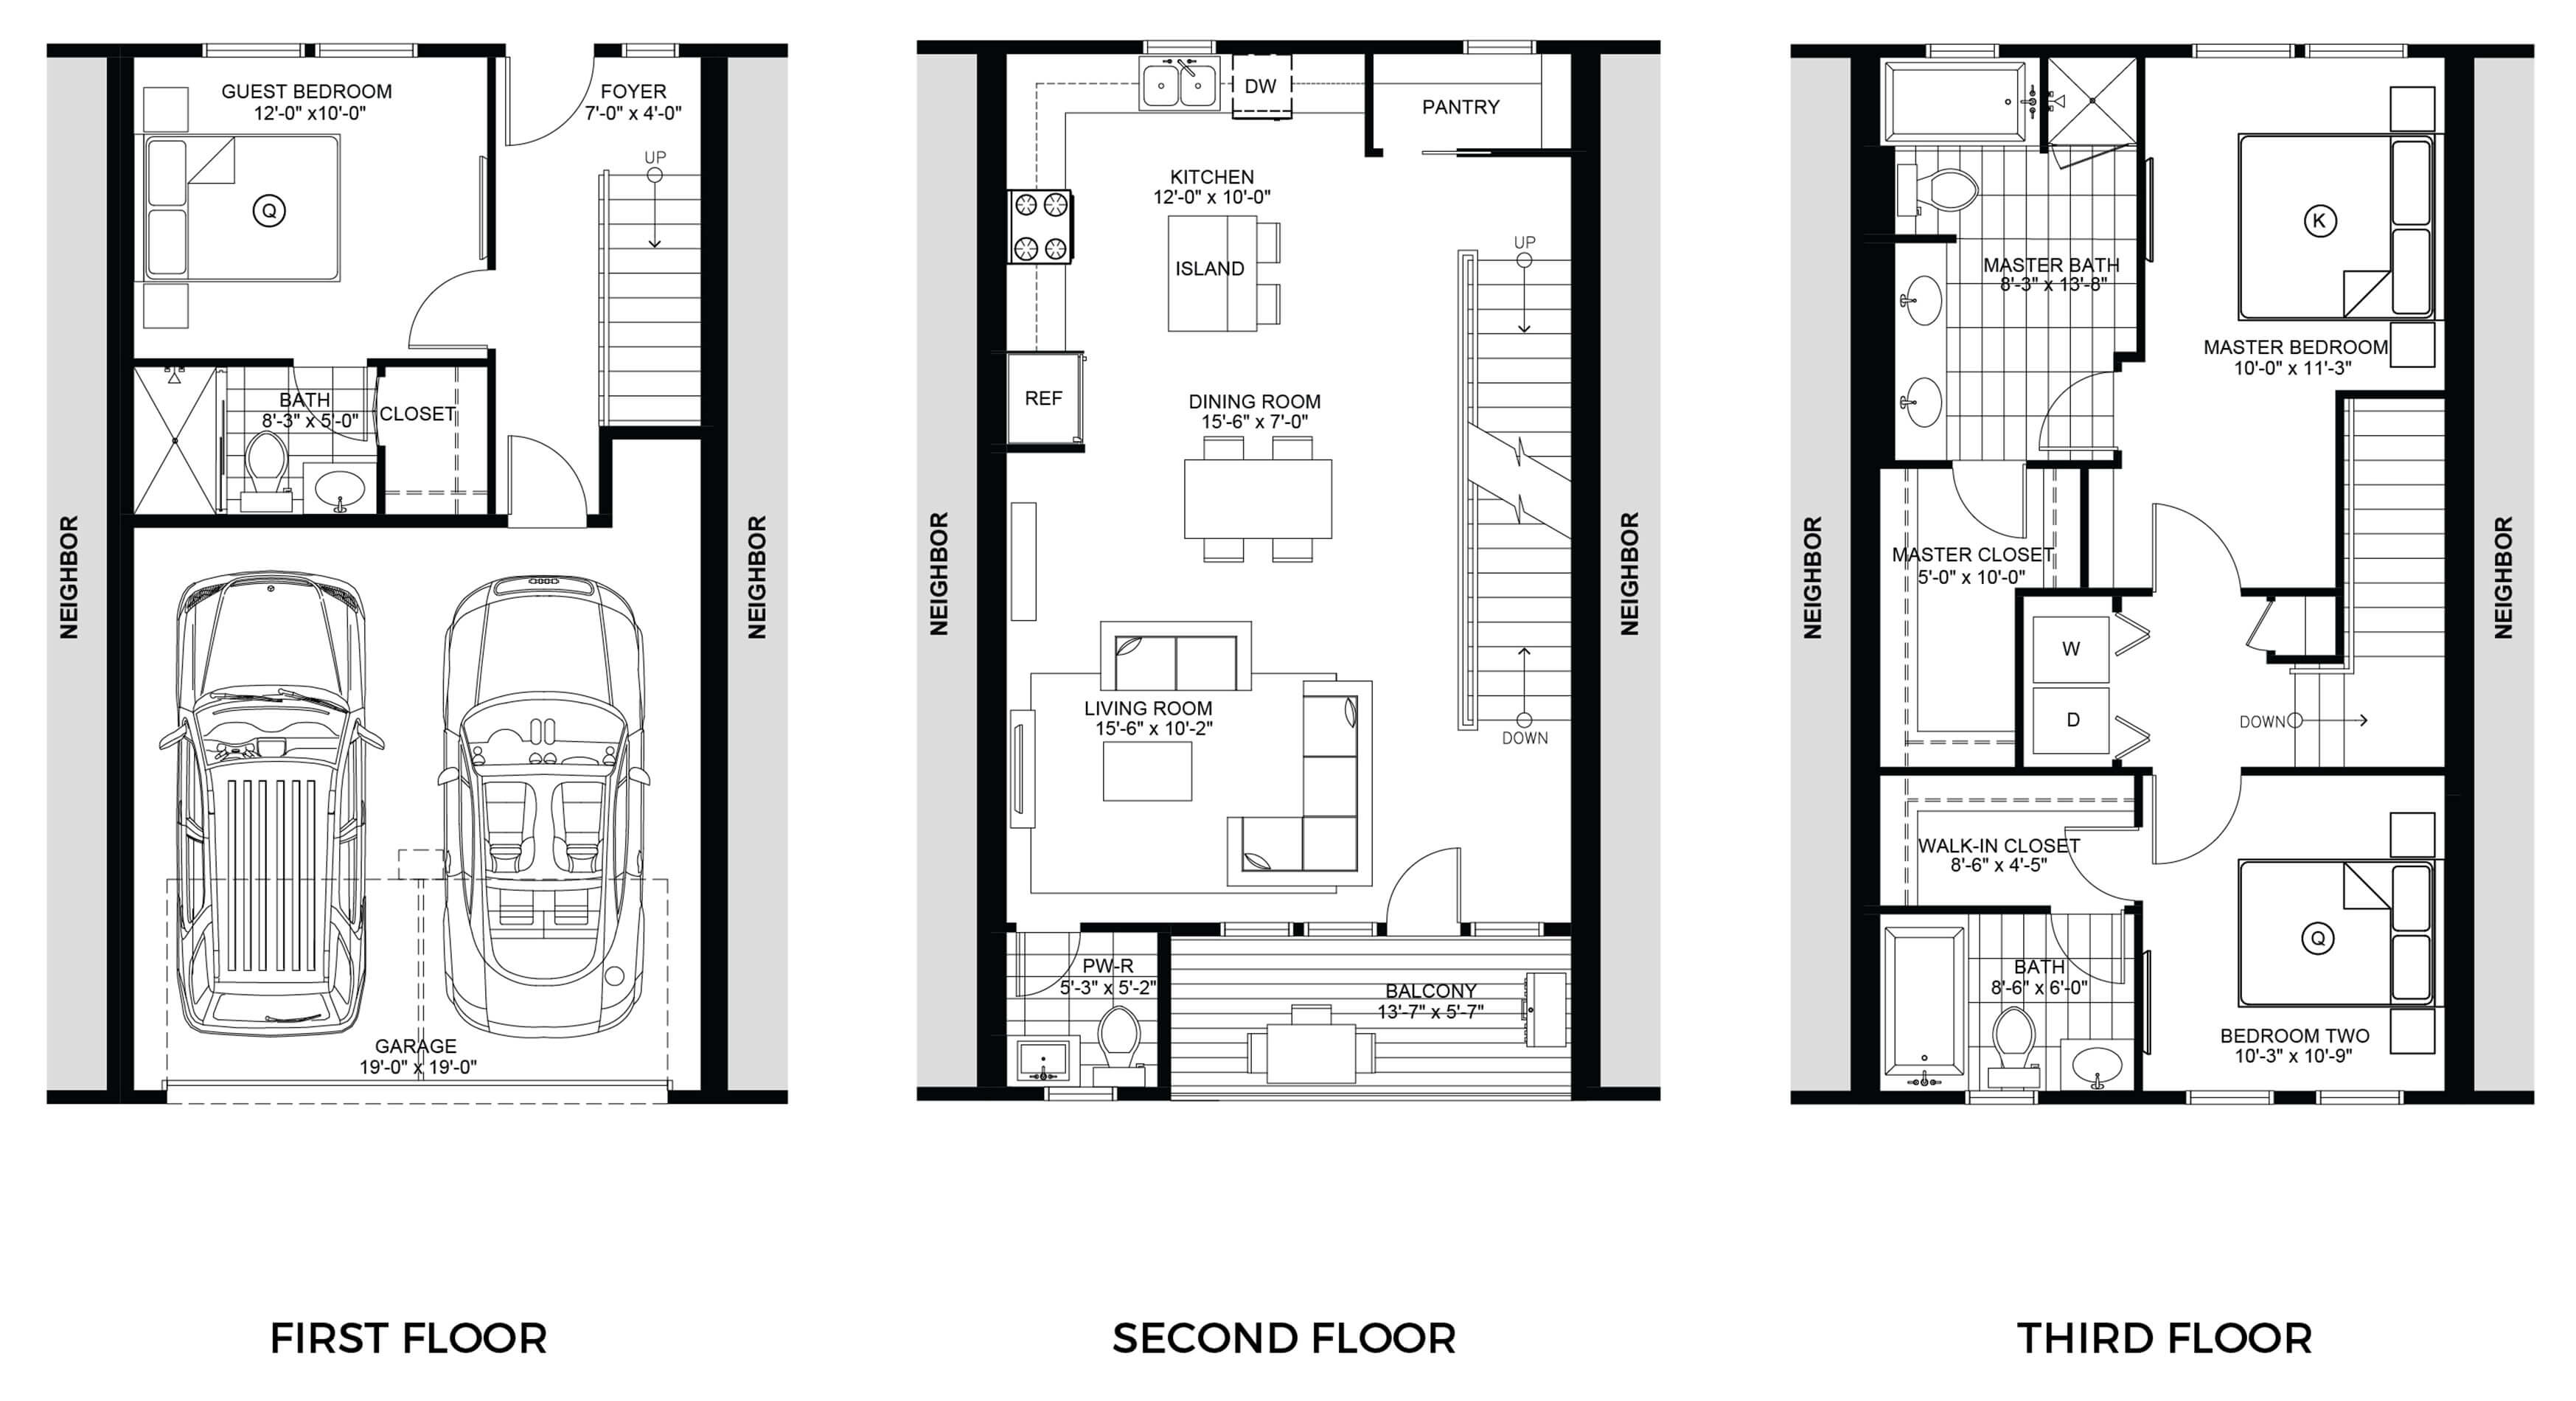 10 Floor Plan Of Frasier S Apartment Frasier S Of Apartment Plan